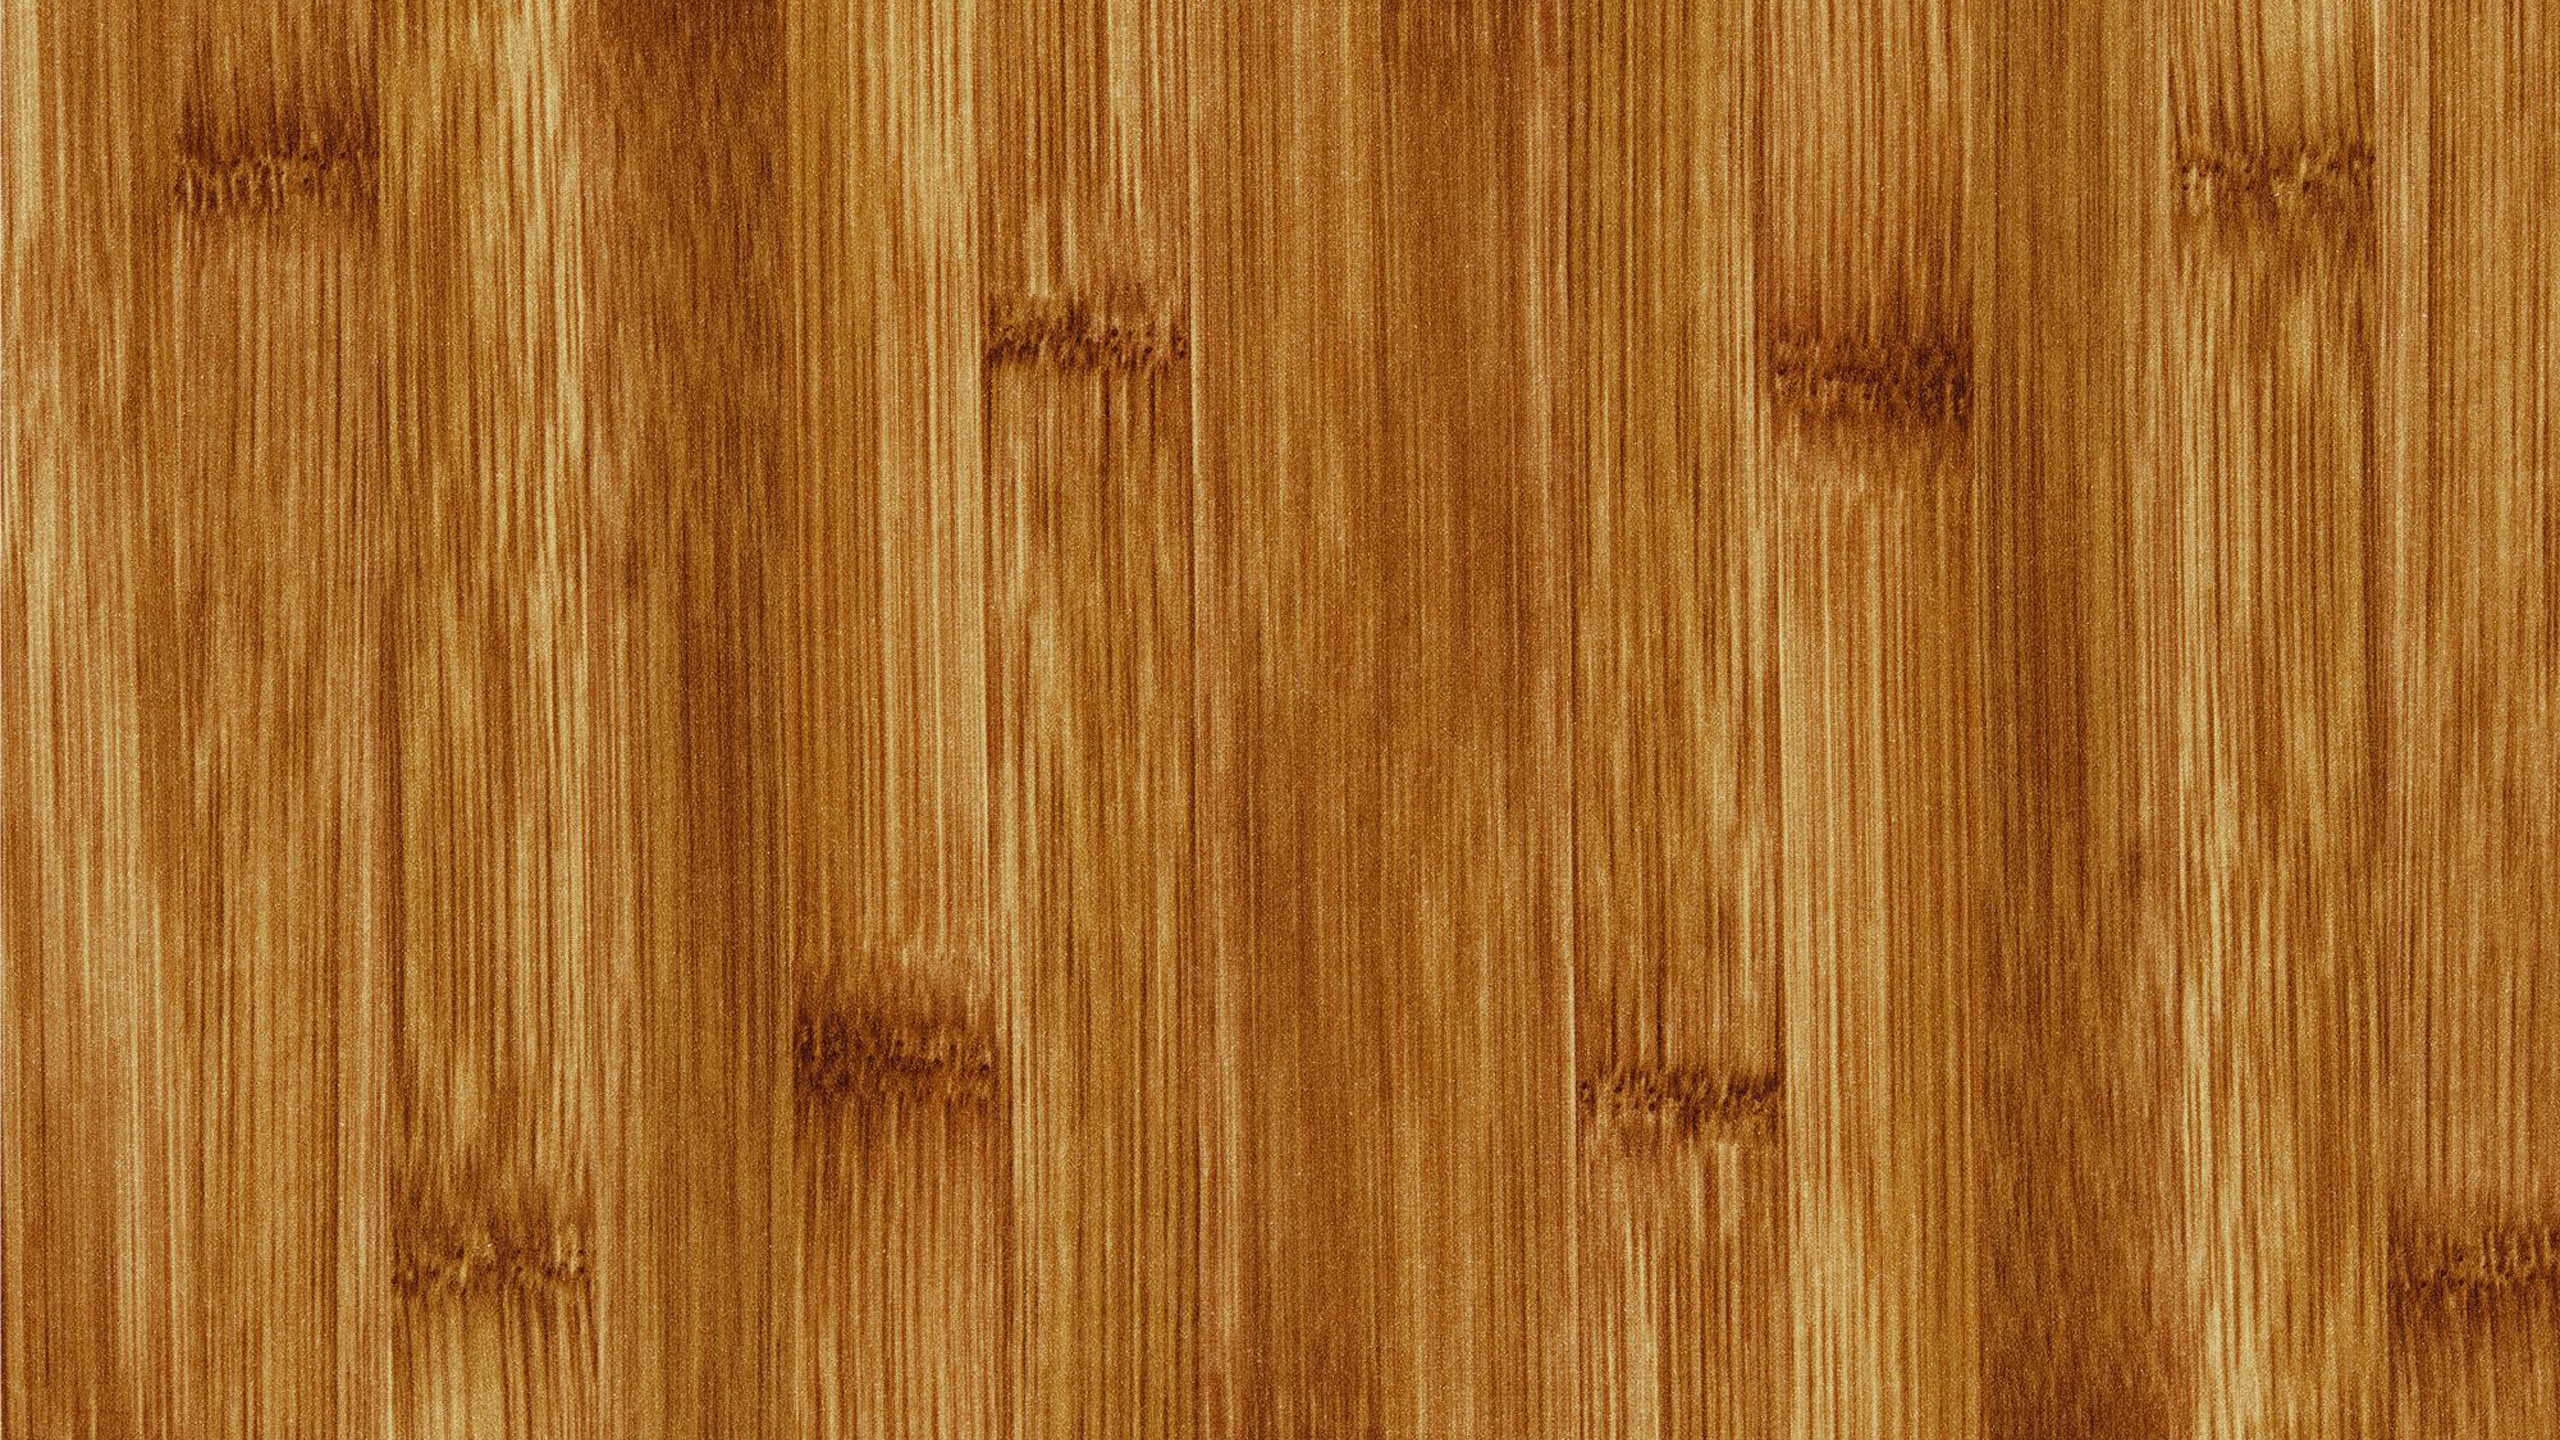 木, 硬木, 地板, 胶合板, 木地板 壁纸 2560x1440 允许